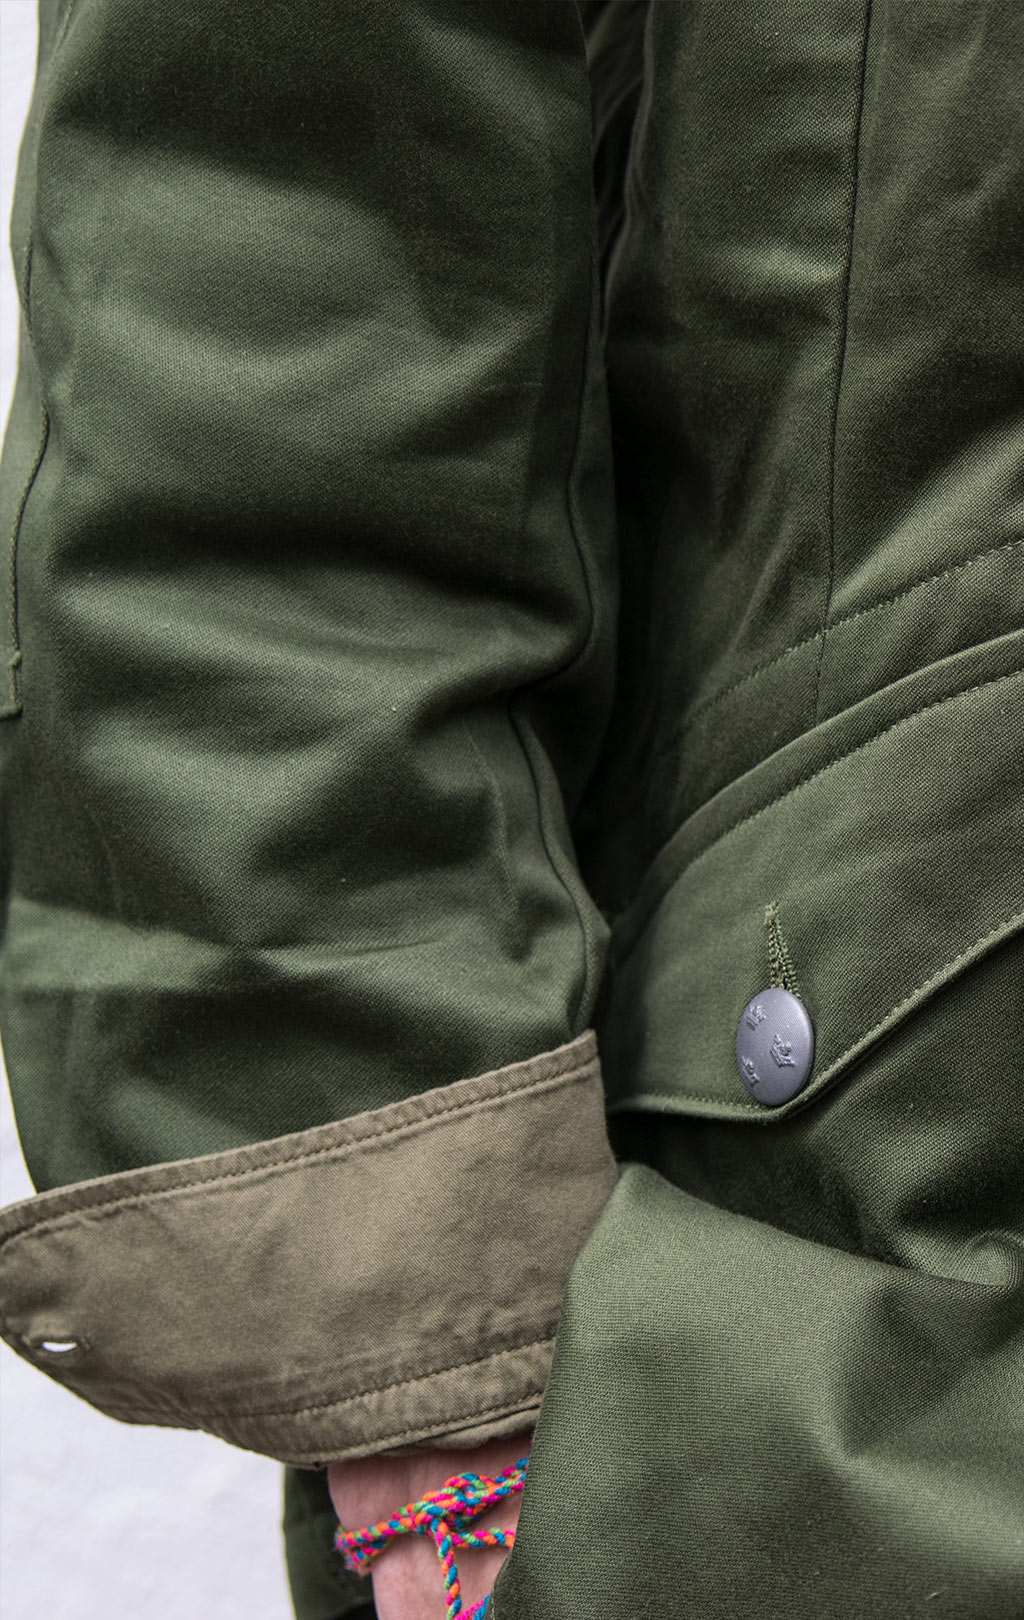 Куртка M-59 лёгкая olive Швеция